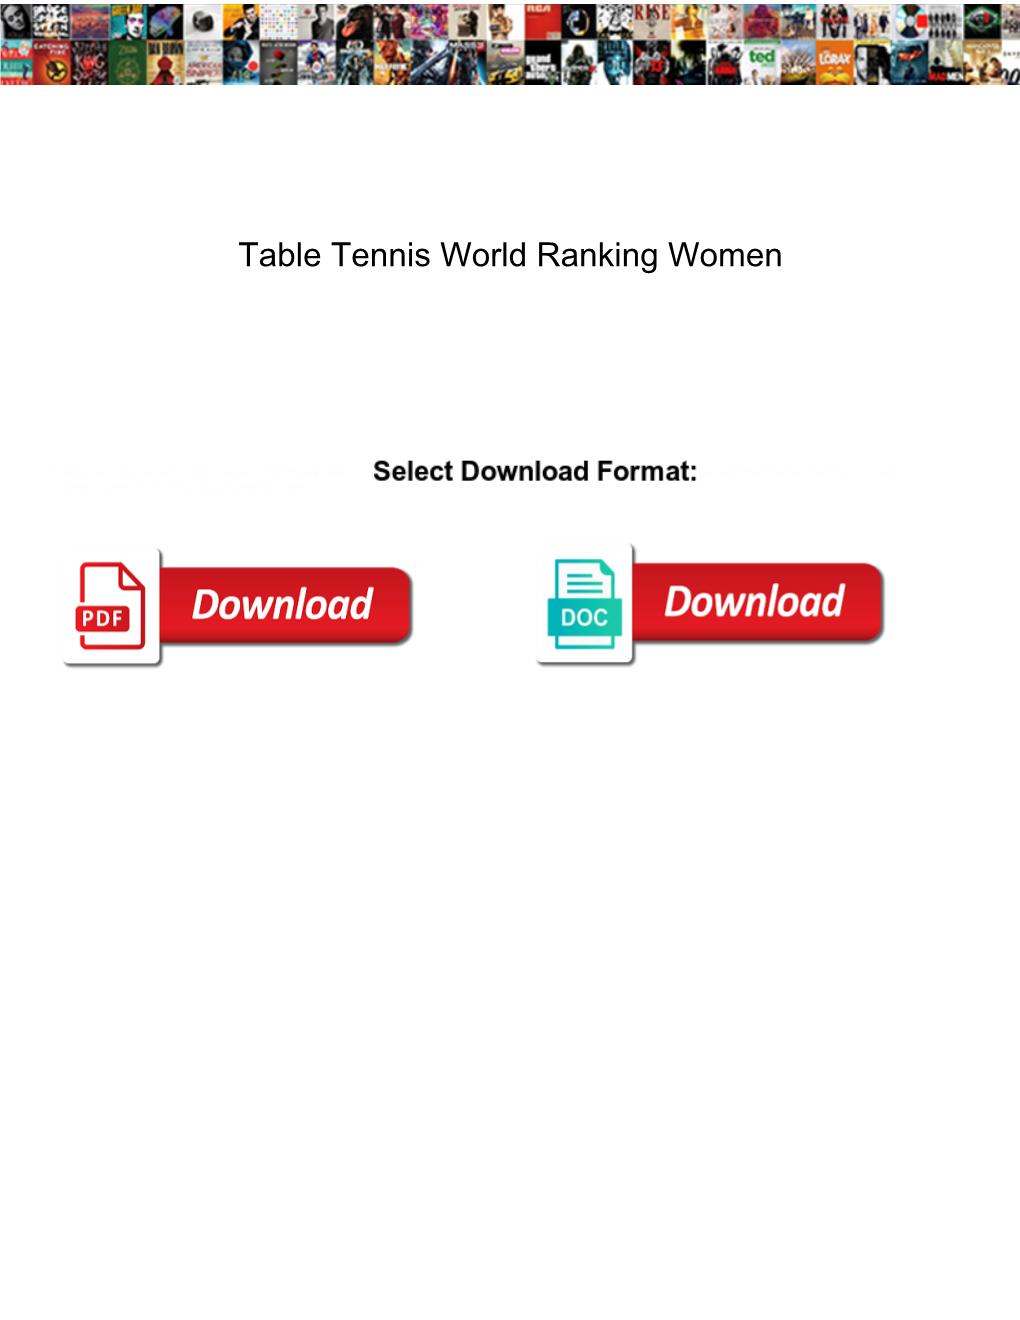 Table Tennis World Ranking Women Fliptime